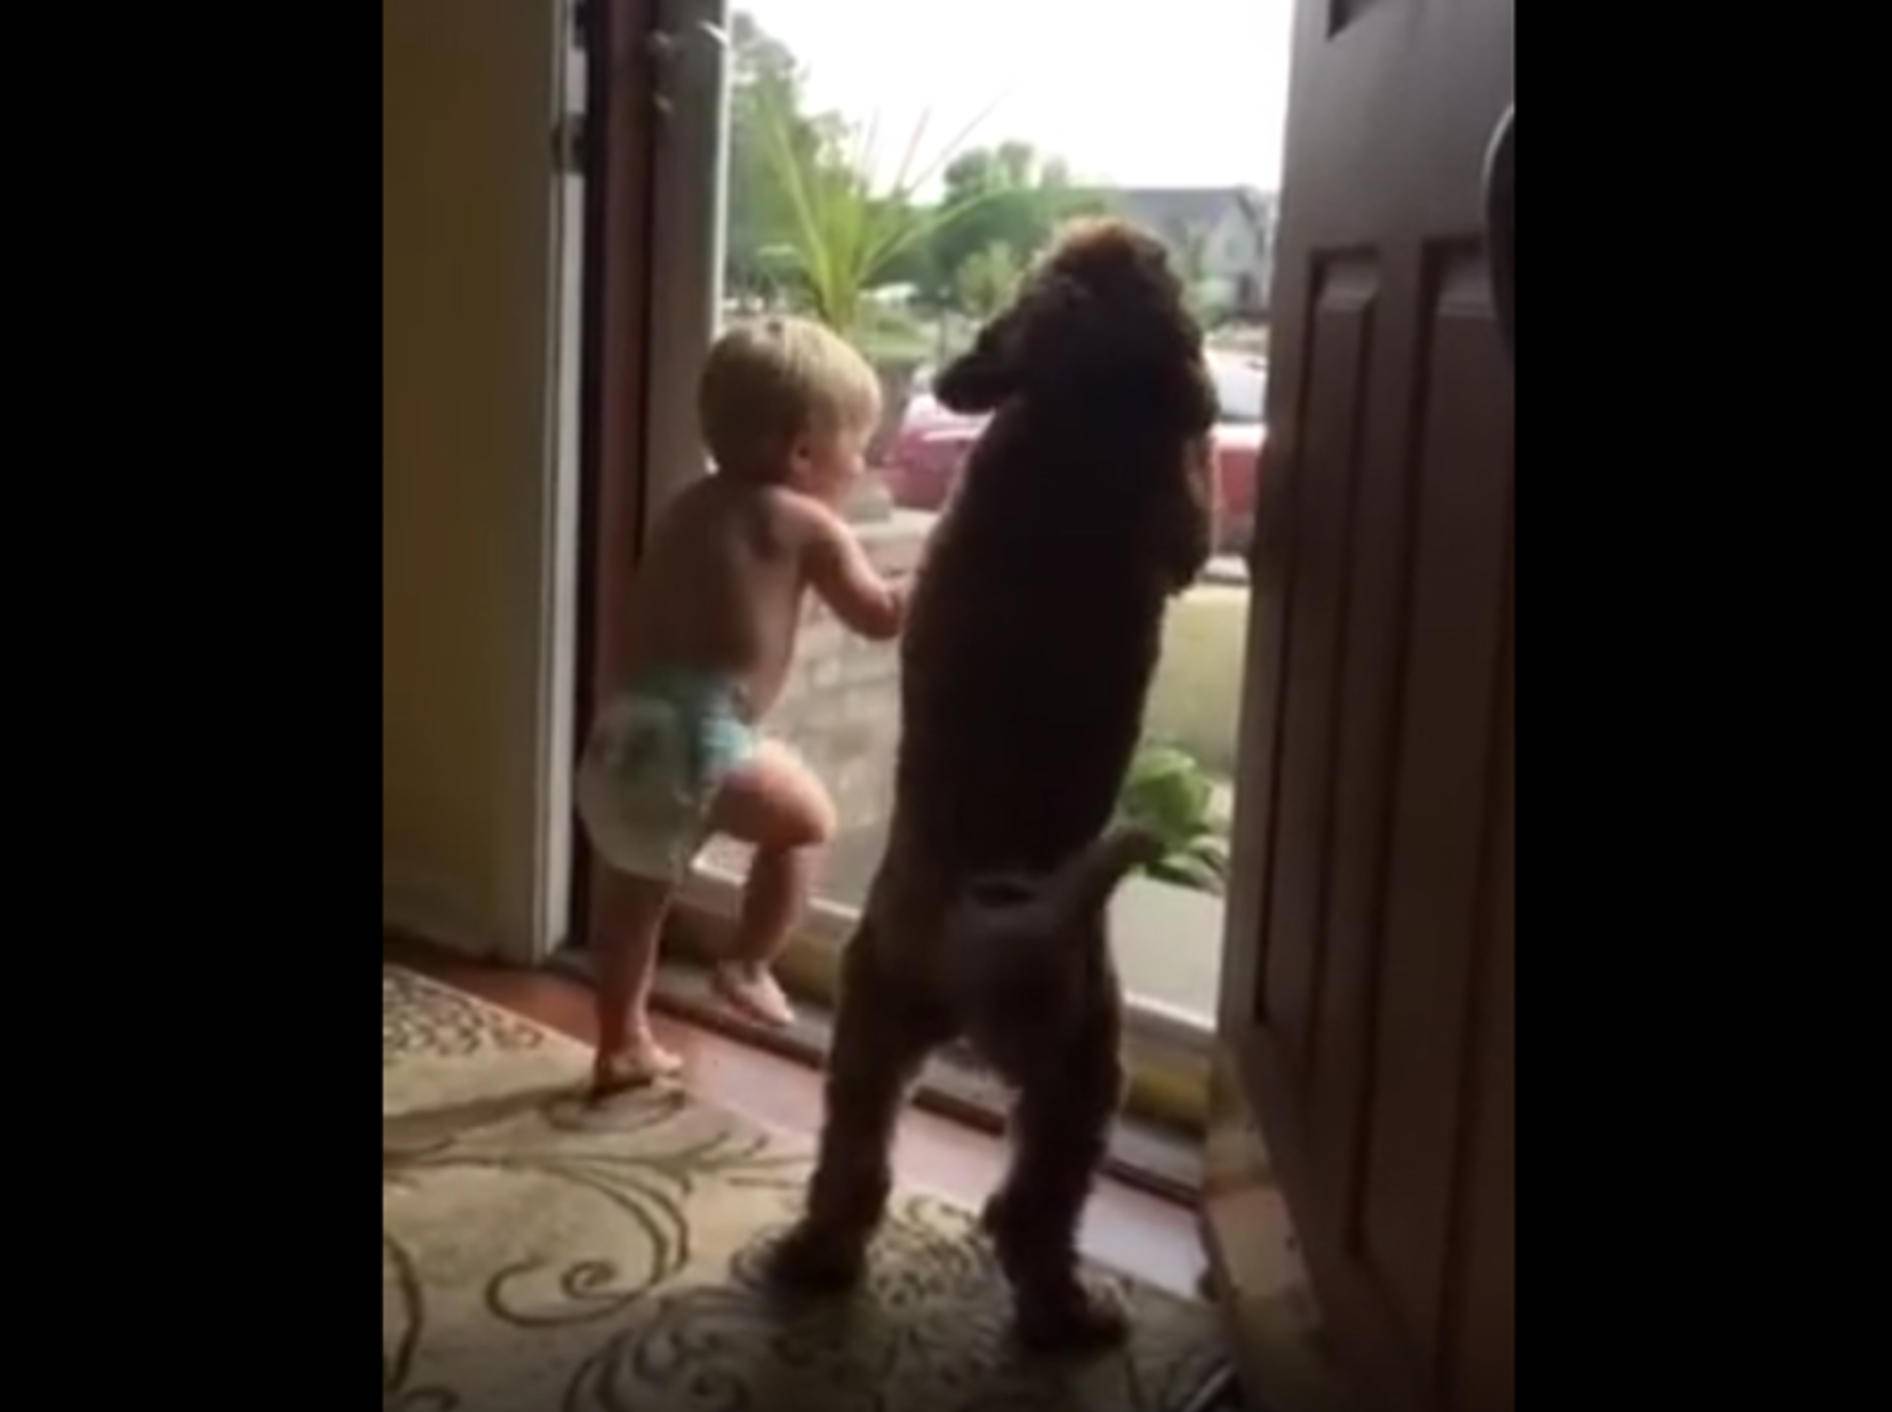 "Da kommt Papa! Juhu!": So ein schöner Empfang von Hund und Söhnchen – YouTube / Natalie G